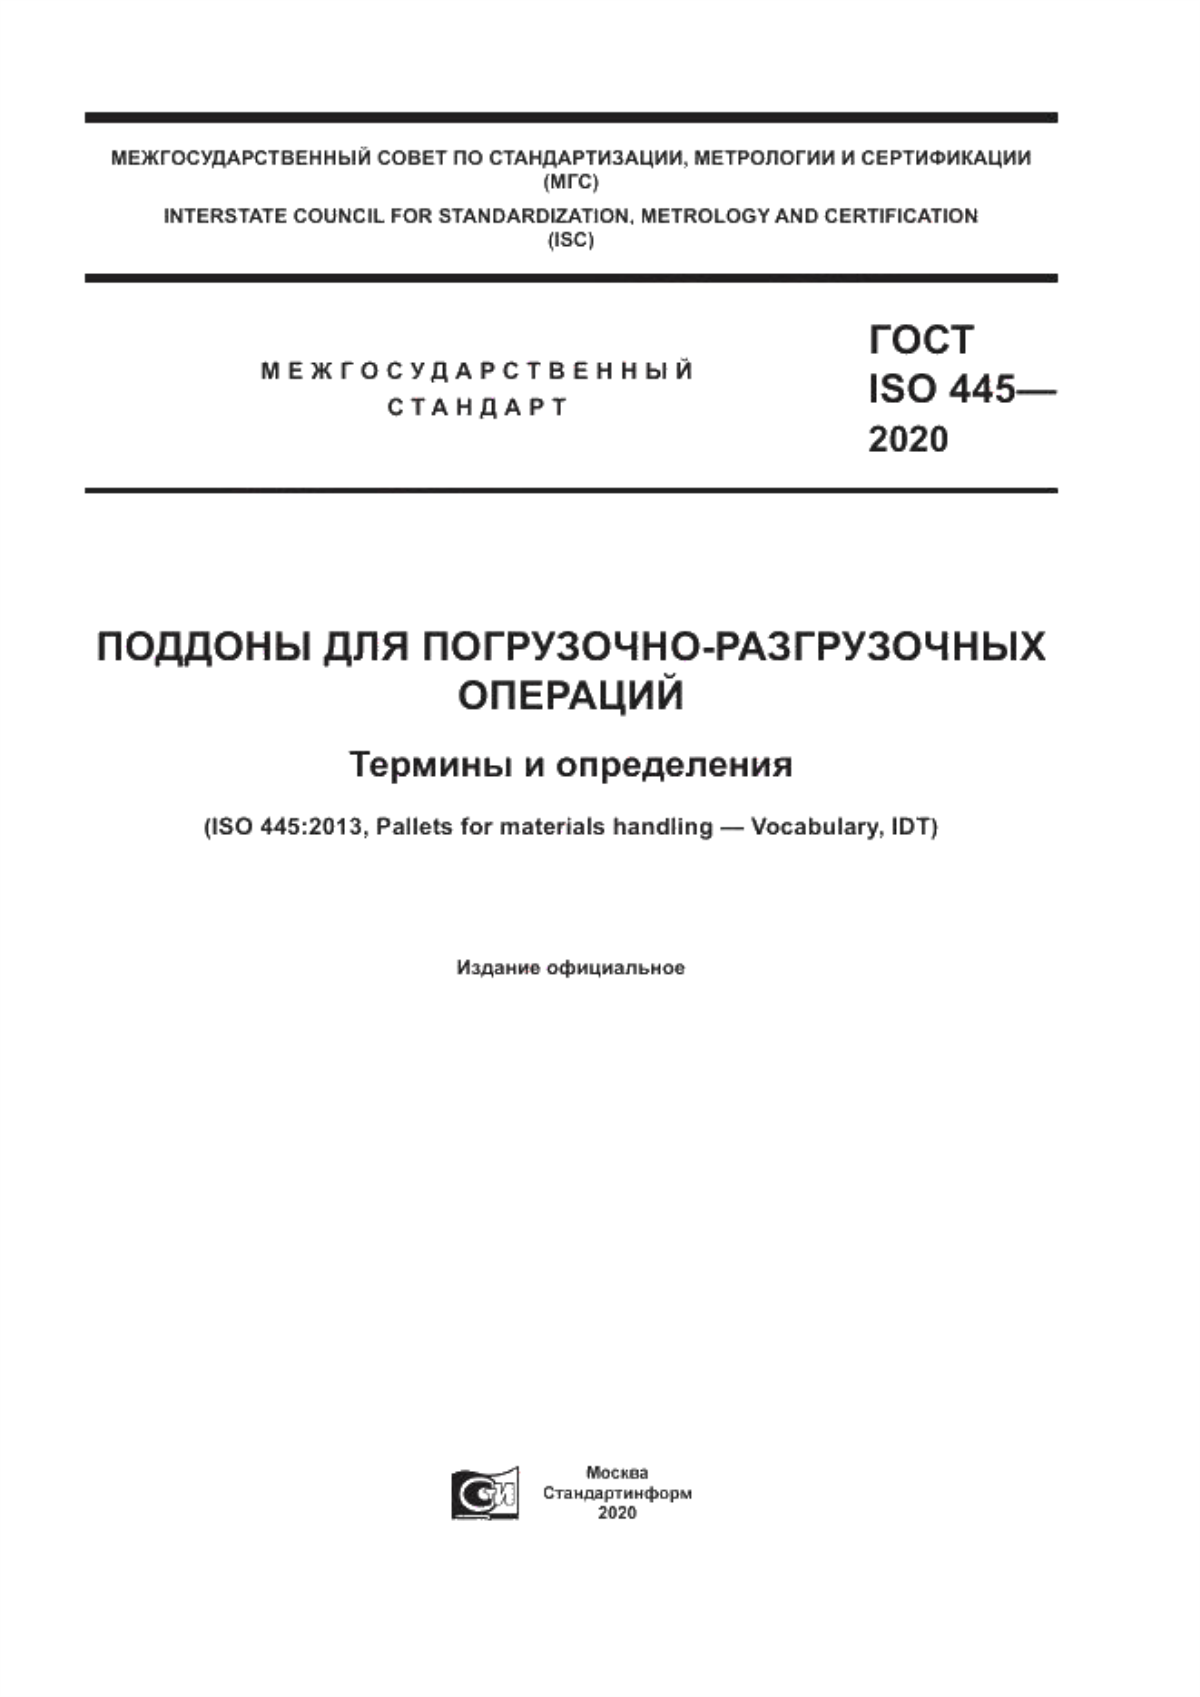 ГОСТ ISO 445-2020 Поддоны для погрузочно-разгрузочных операций. Термины и определения